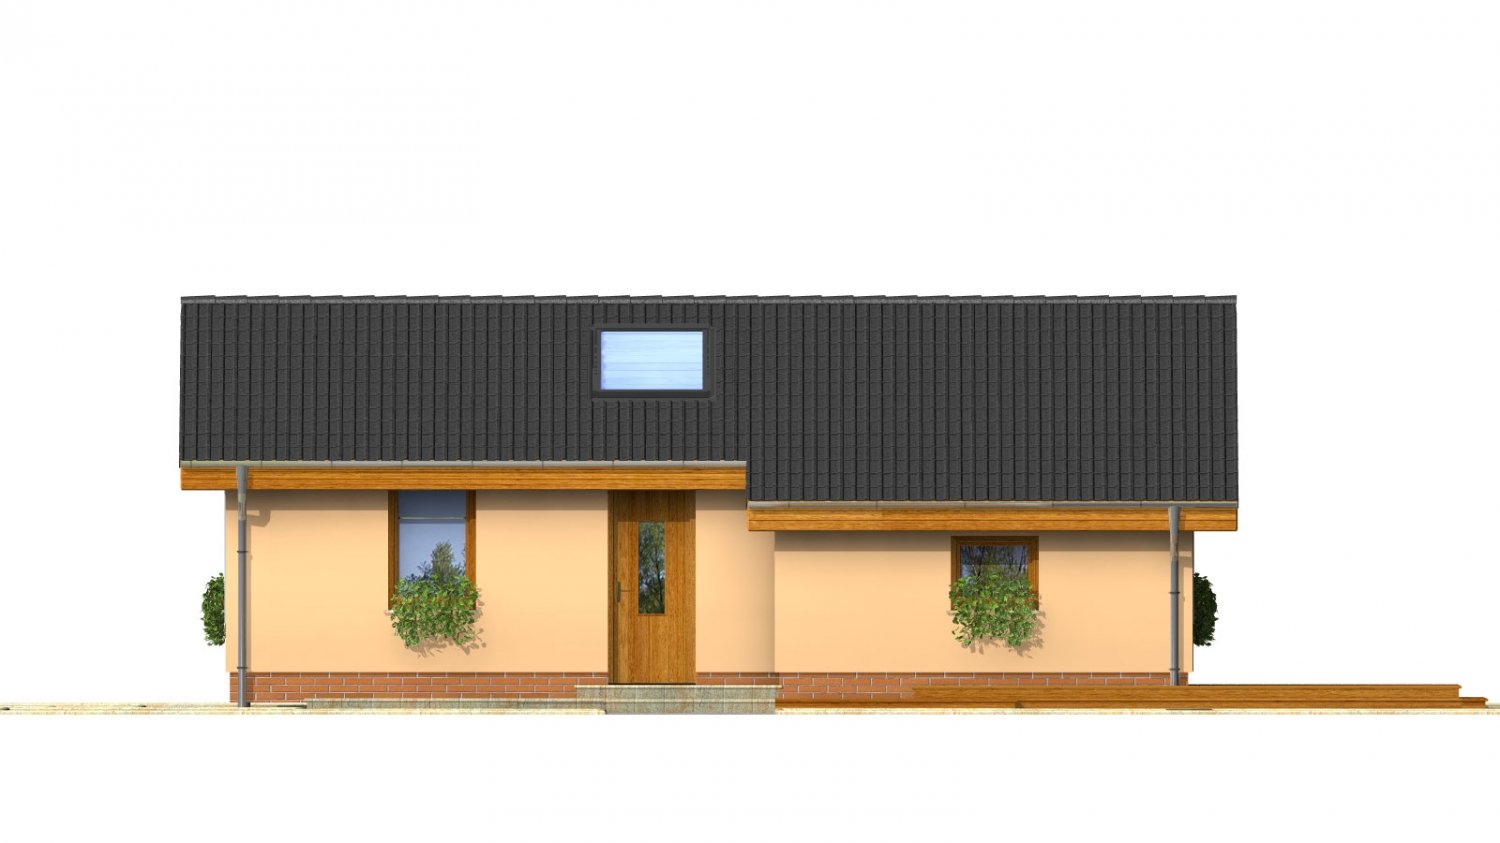 Pohľad 1. - Levný úzký dům na malý pozemek se sedlovou střechou, prosvětlený střešními okny Velux. Efekt podkroví na přízemí.